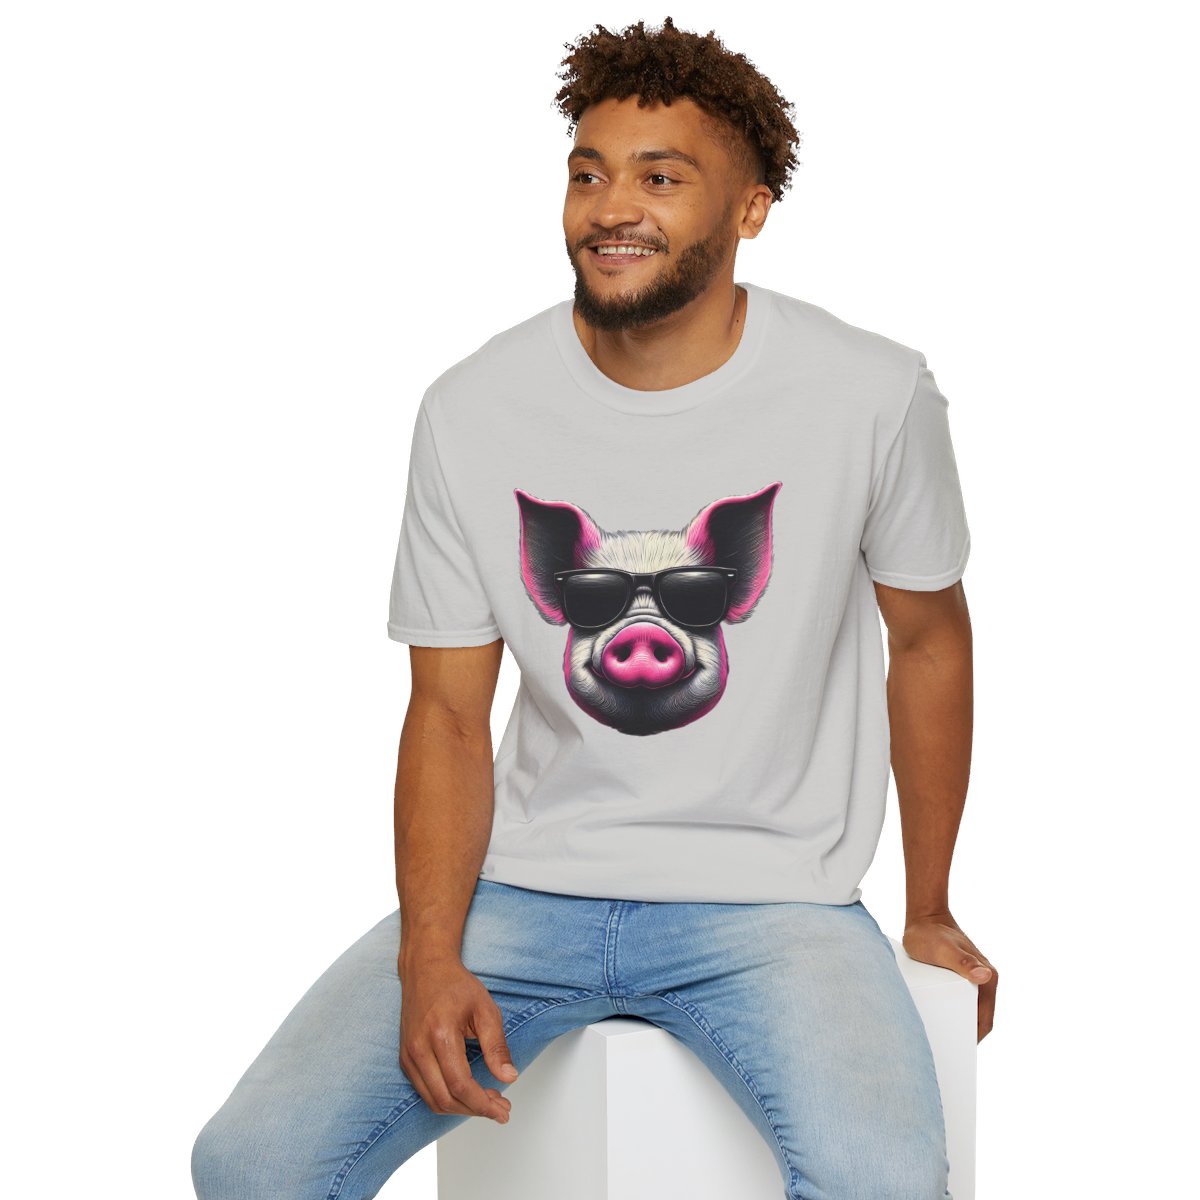 Graphic ArtPink Pig Face Unique T-Shirt Image 7